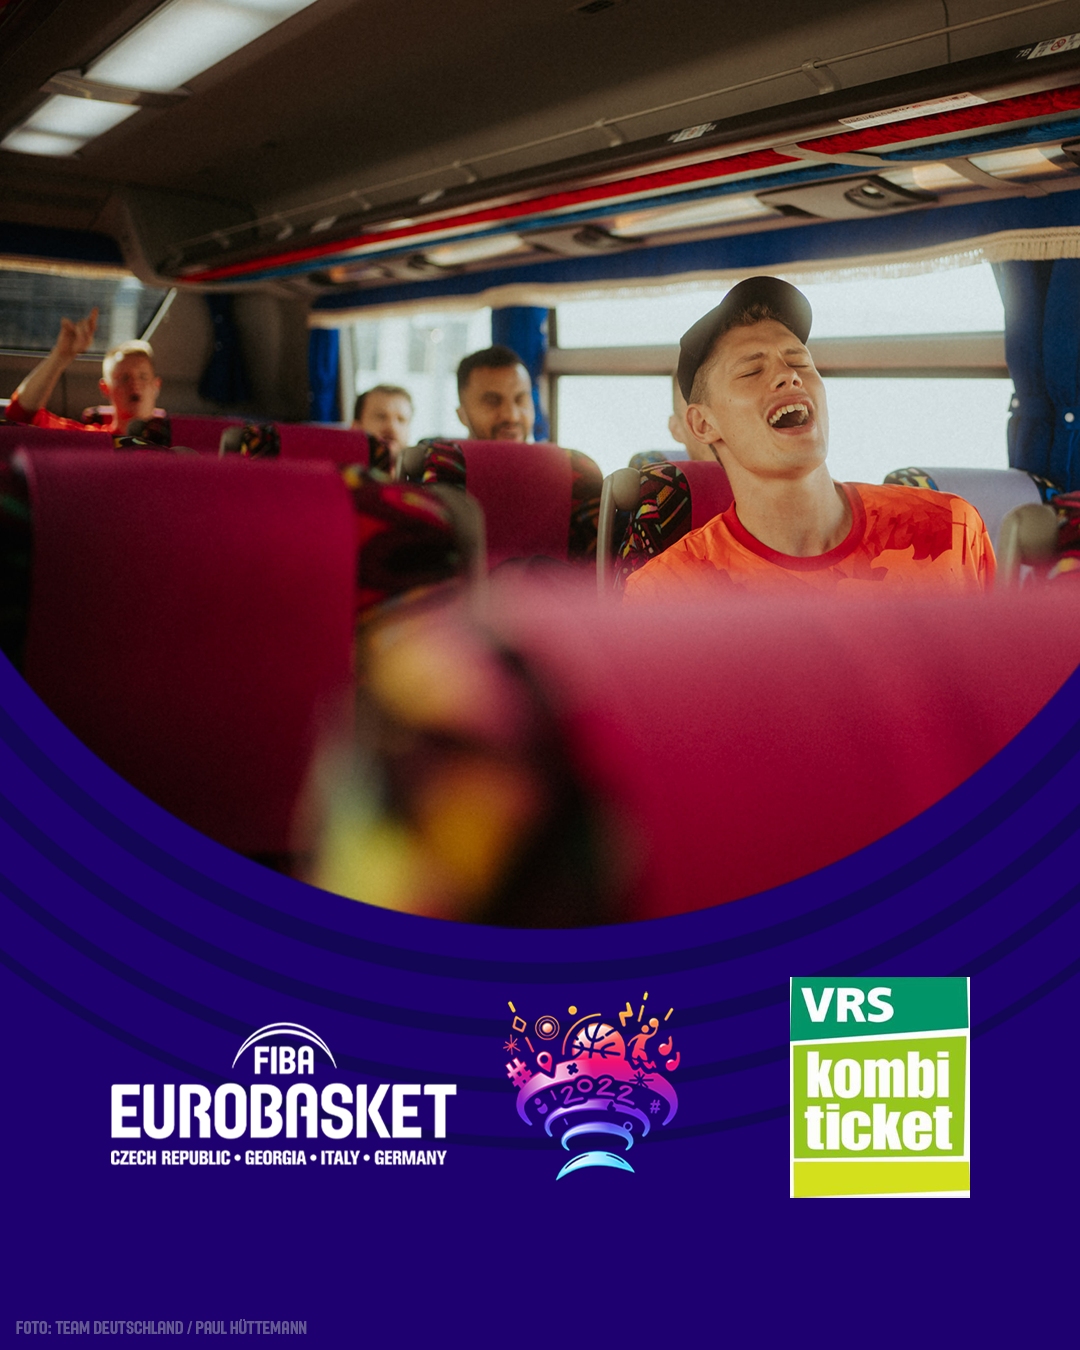 Das Kombi-Ticket für die EuroBasket 2022 in Köln